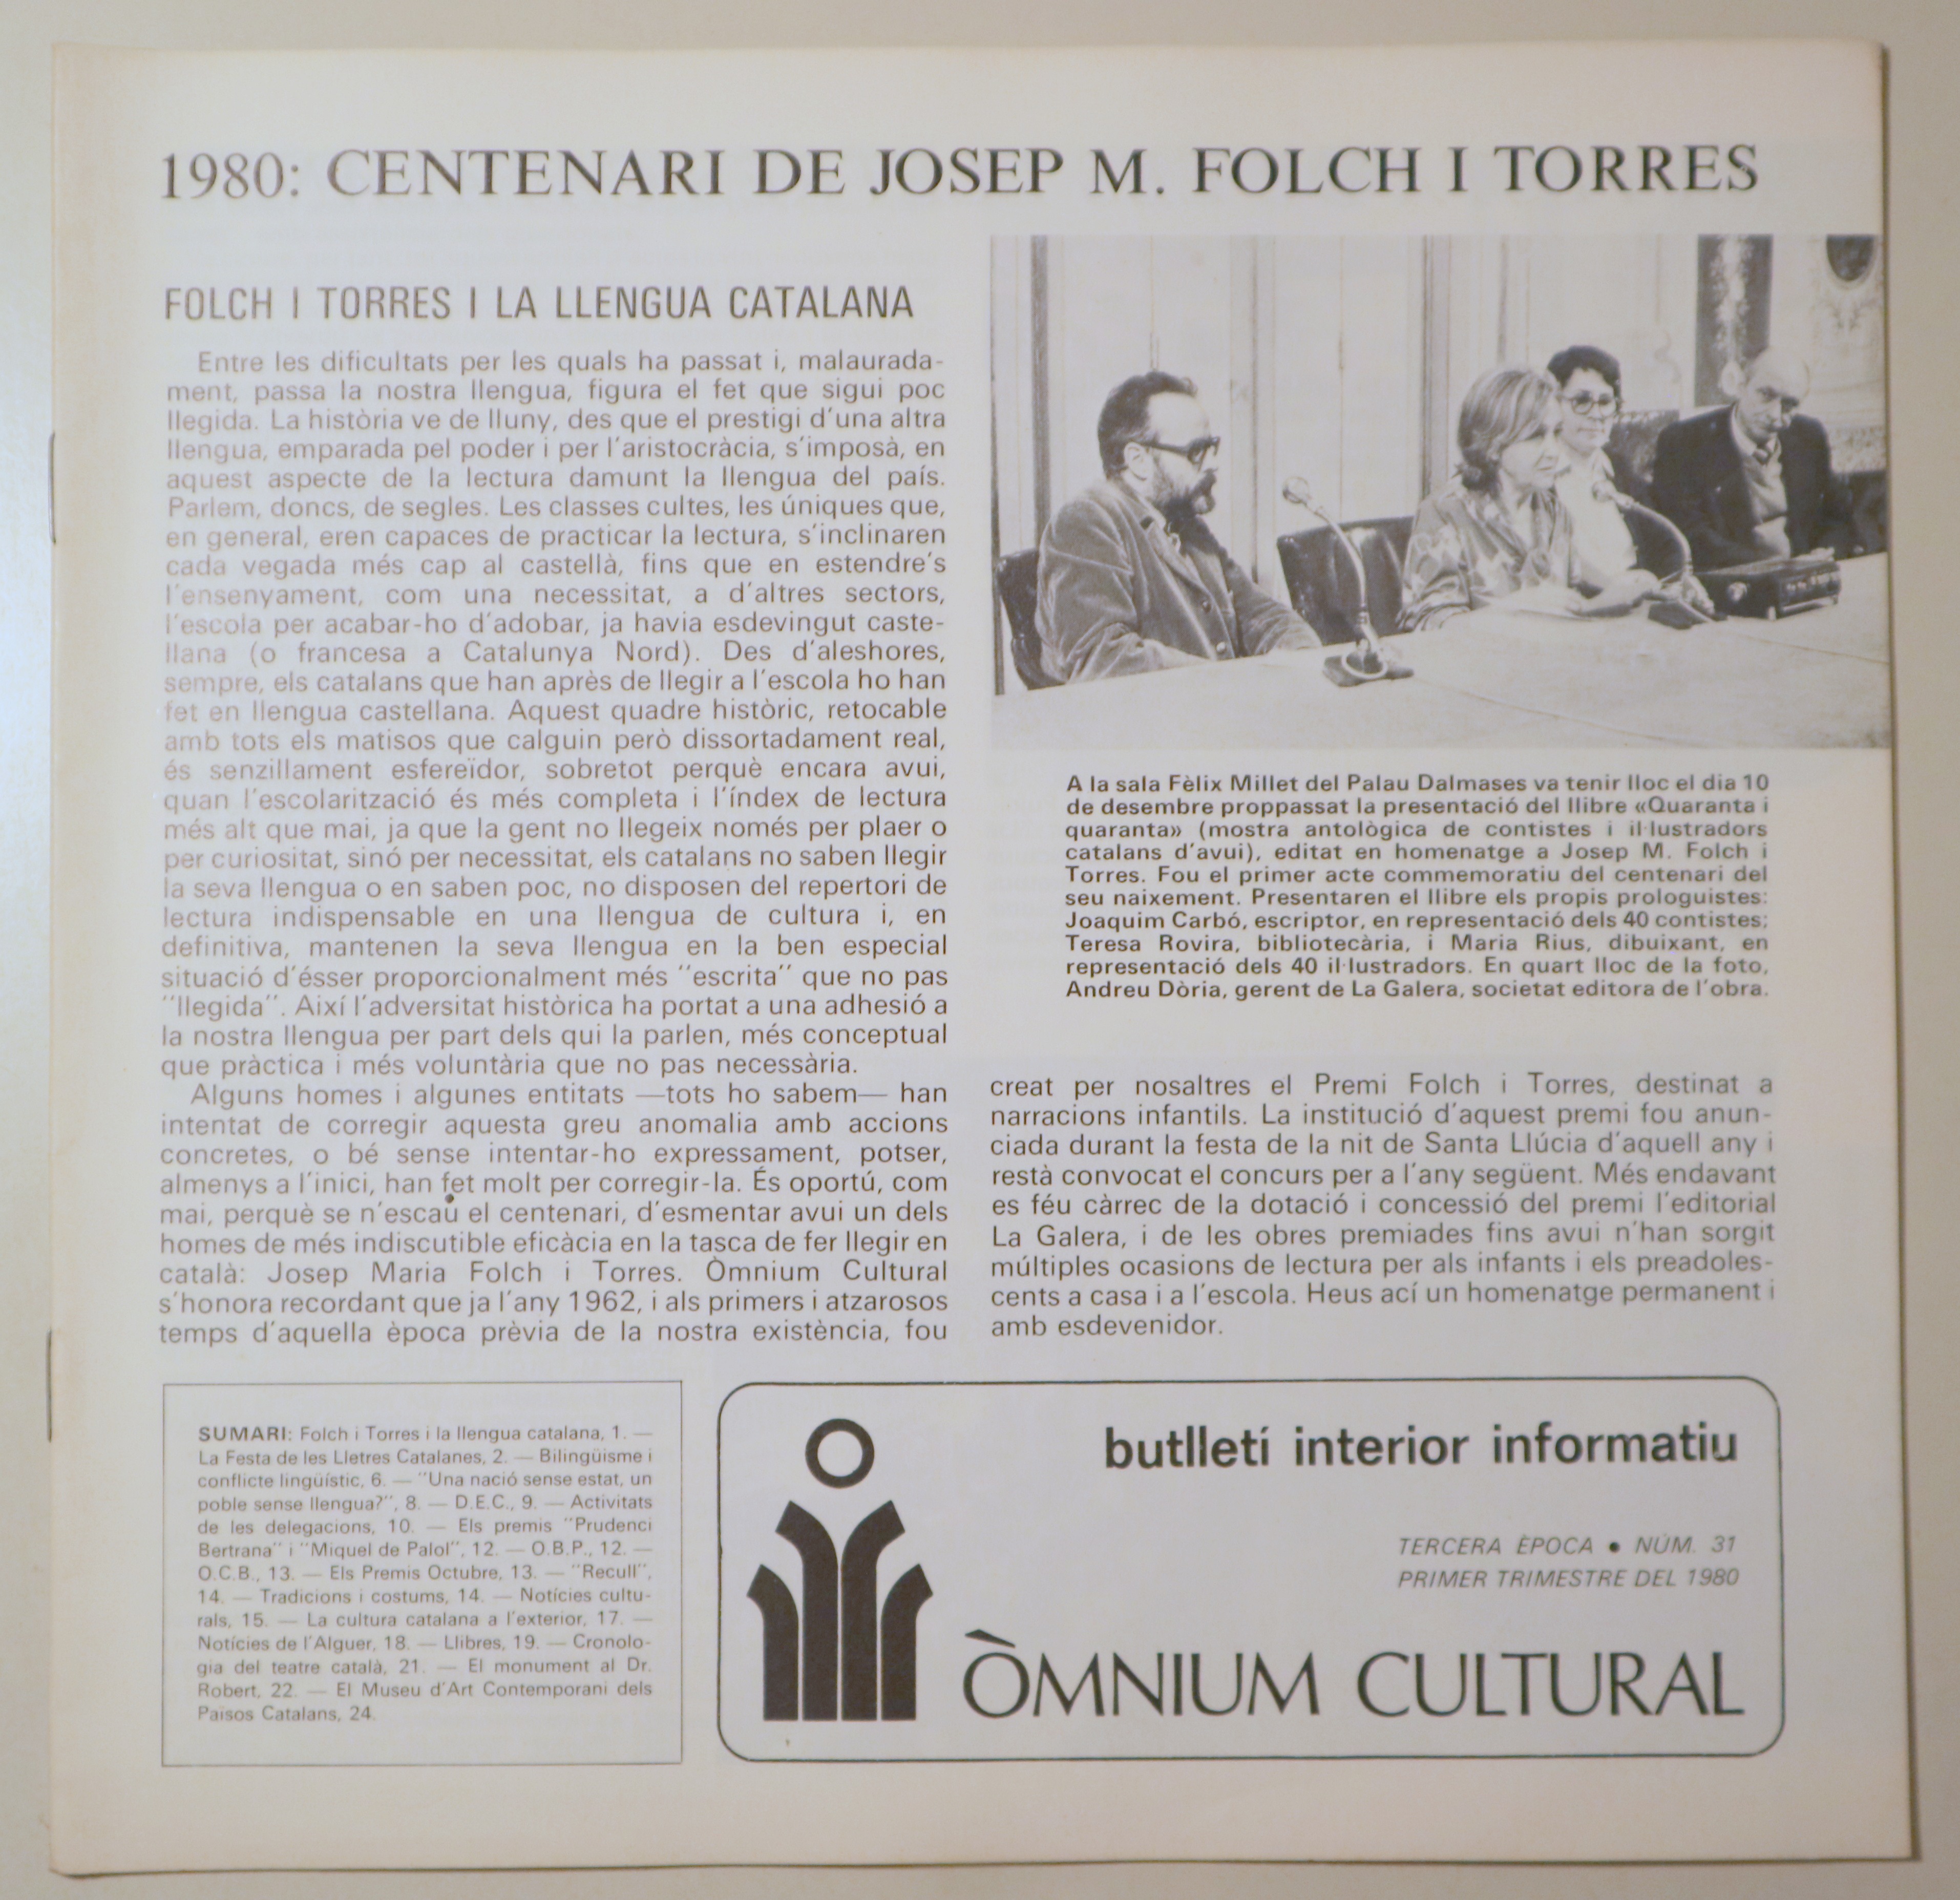 BUTLLETÍ INTERIOR INFORMATIU D'ÒMNIUM CULTURAL 3ª època, núm. 31. Primer trimestre de 1980 - Barcelona 1980 - Il·lustrat